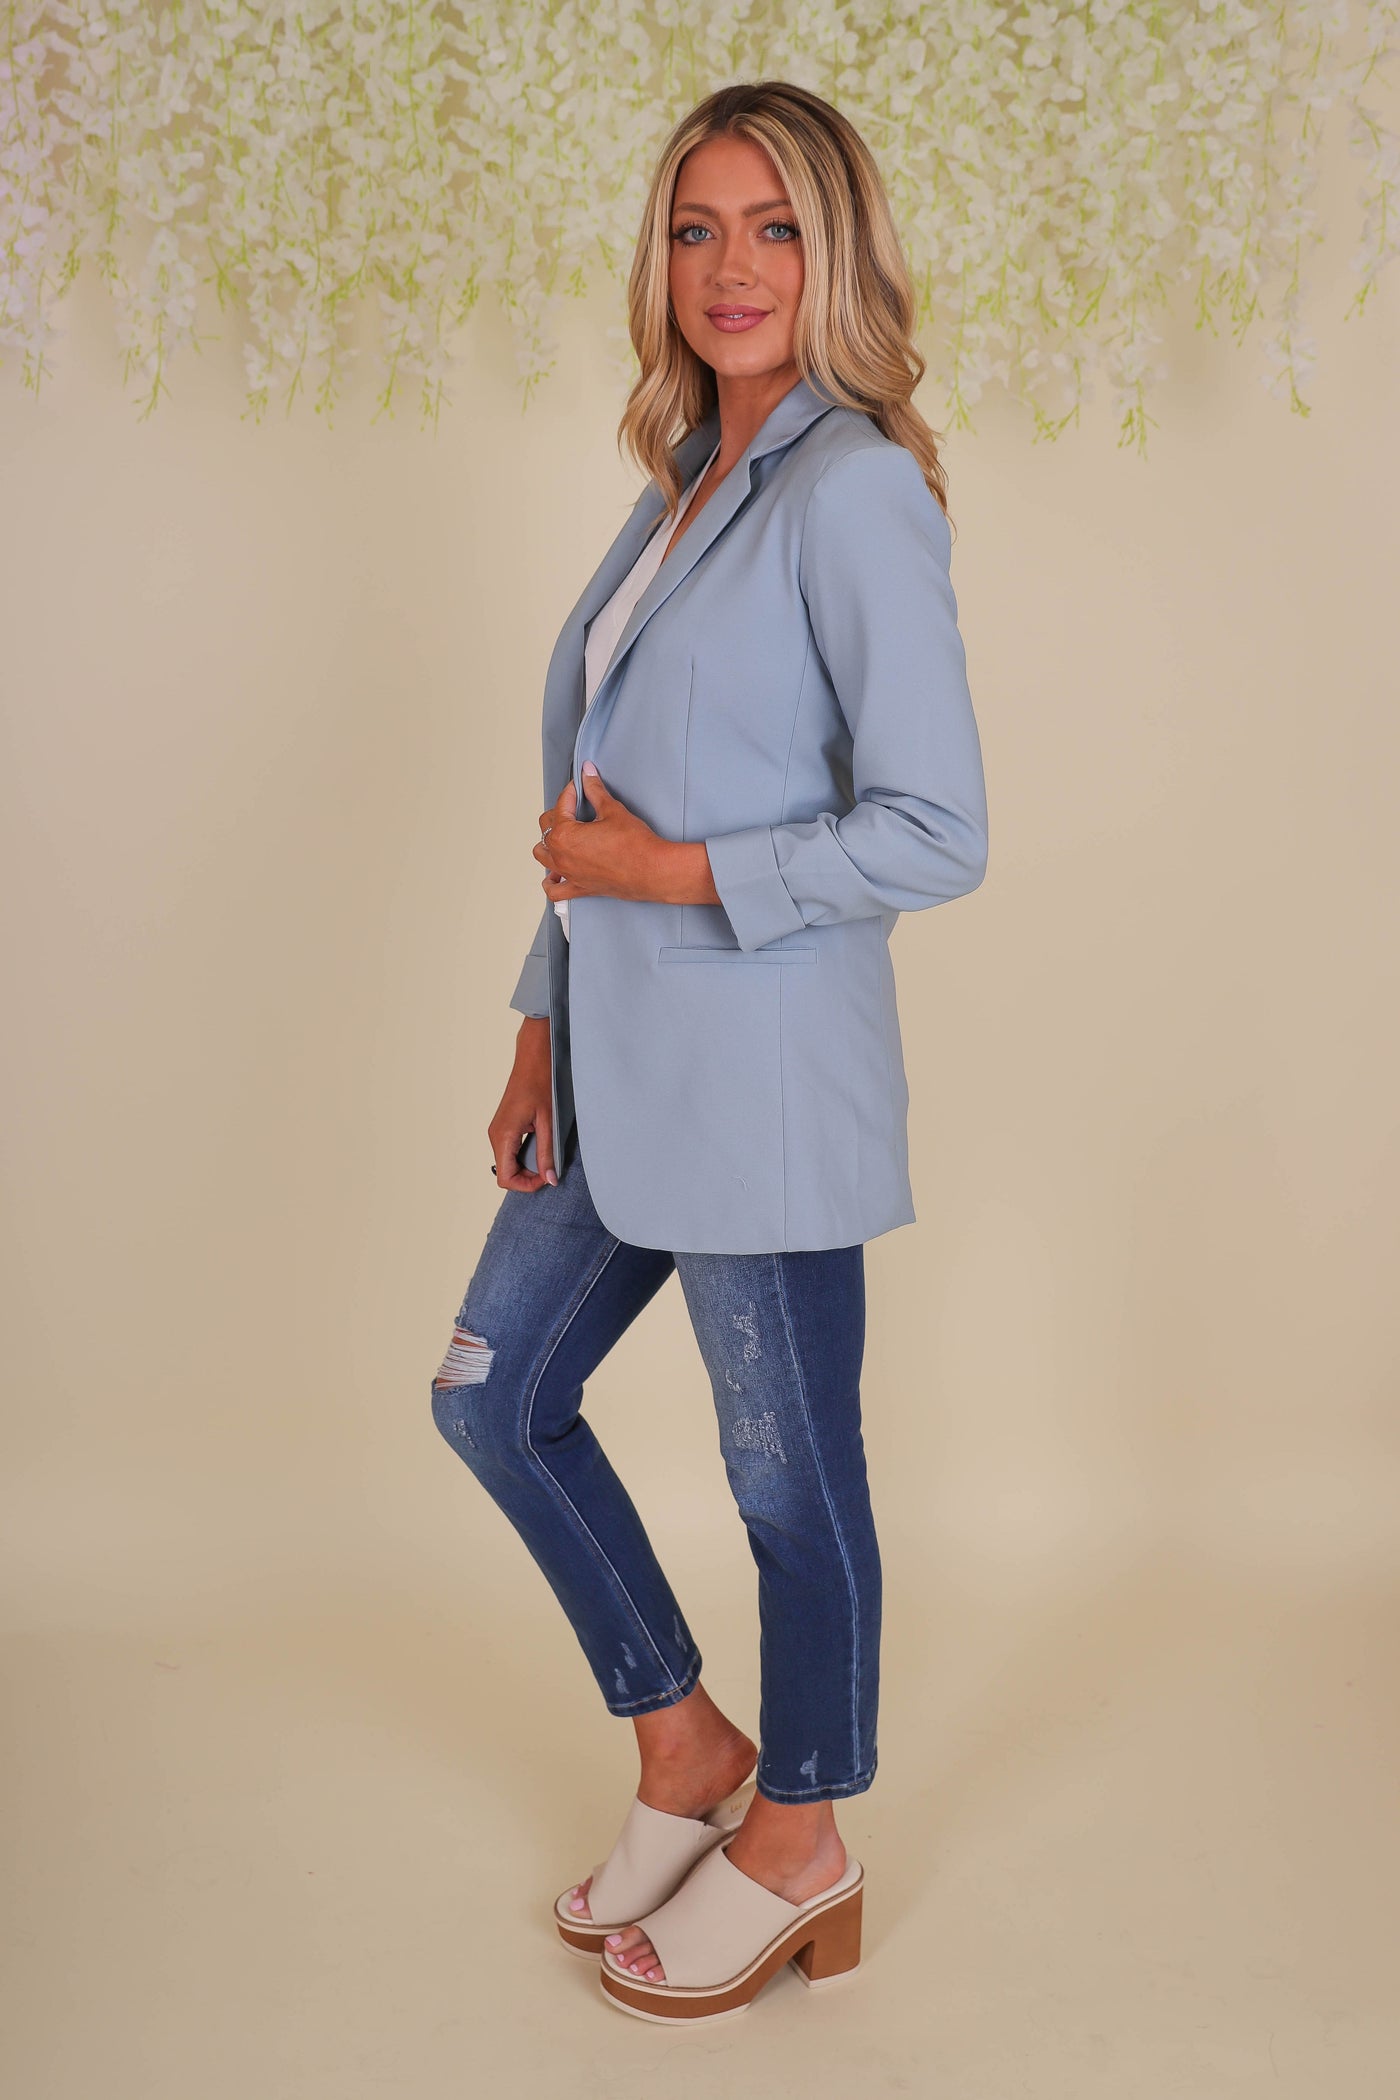 Women's Blue Blazer- Fun Blue Blazer- Trendy Women's Blazer- Love Tree Blazer